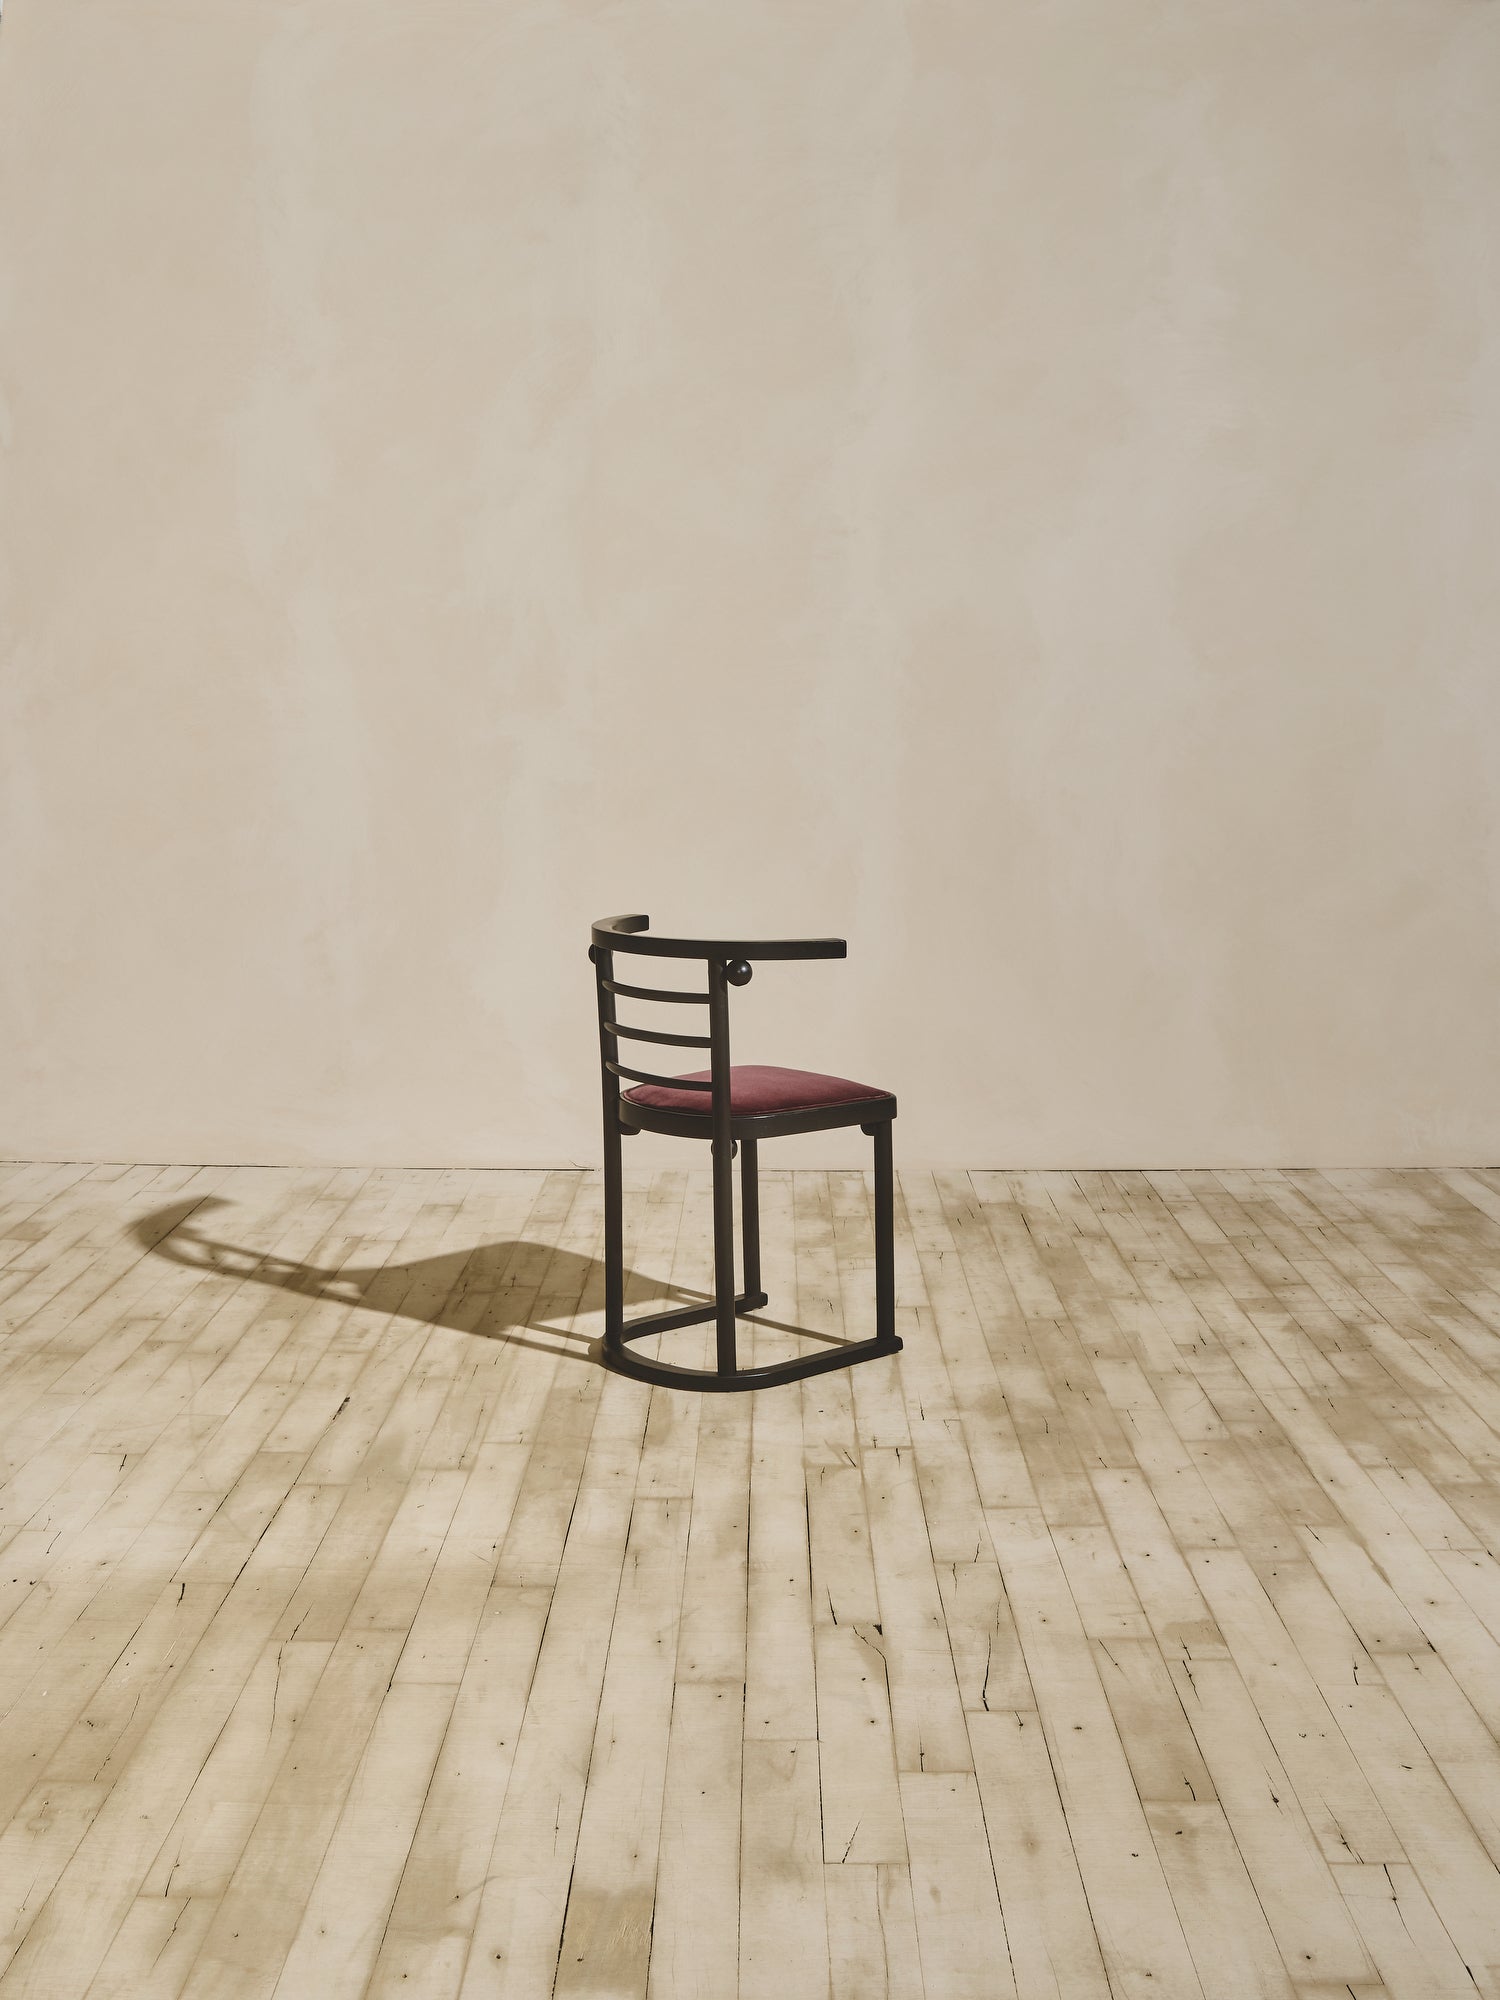 Josef Hoffman Fledermaus Chairs